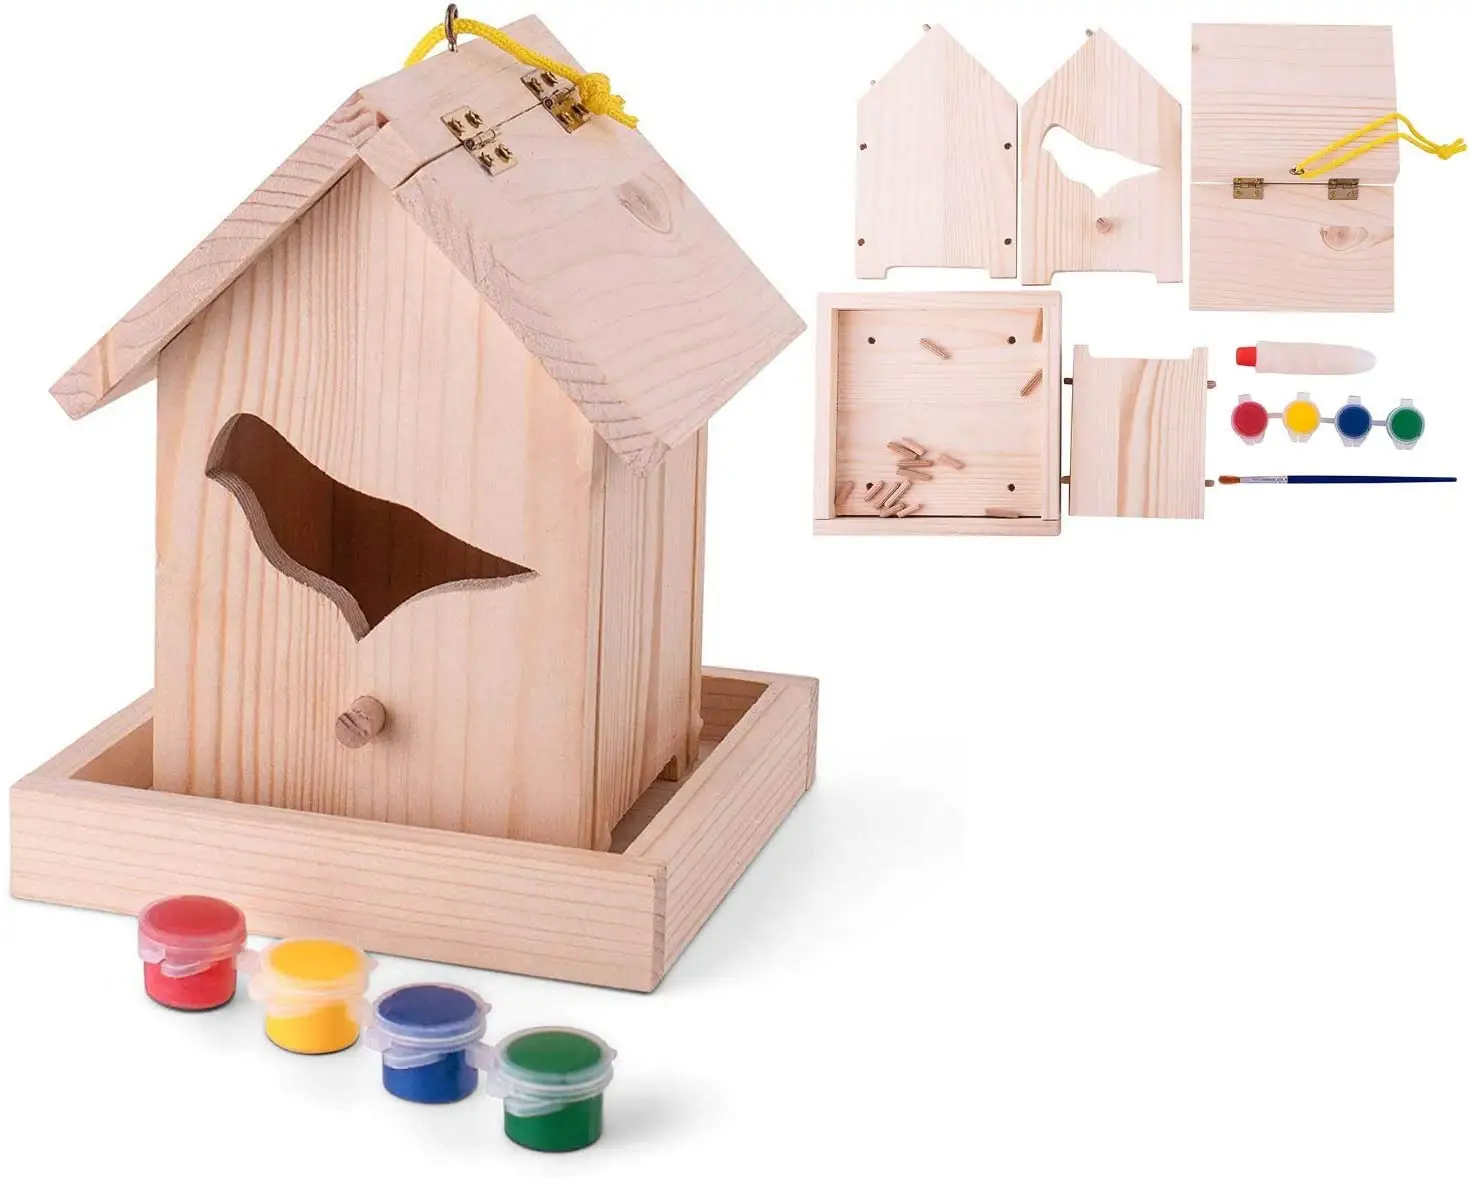 Holz Bird house Kit für Erwachsene Kinder zum Bau von Bird House Kits Kids Paint Houses